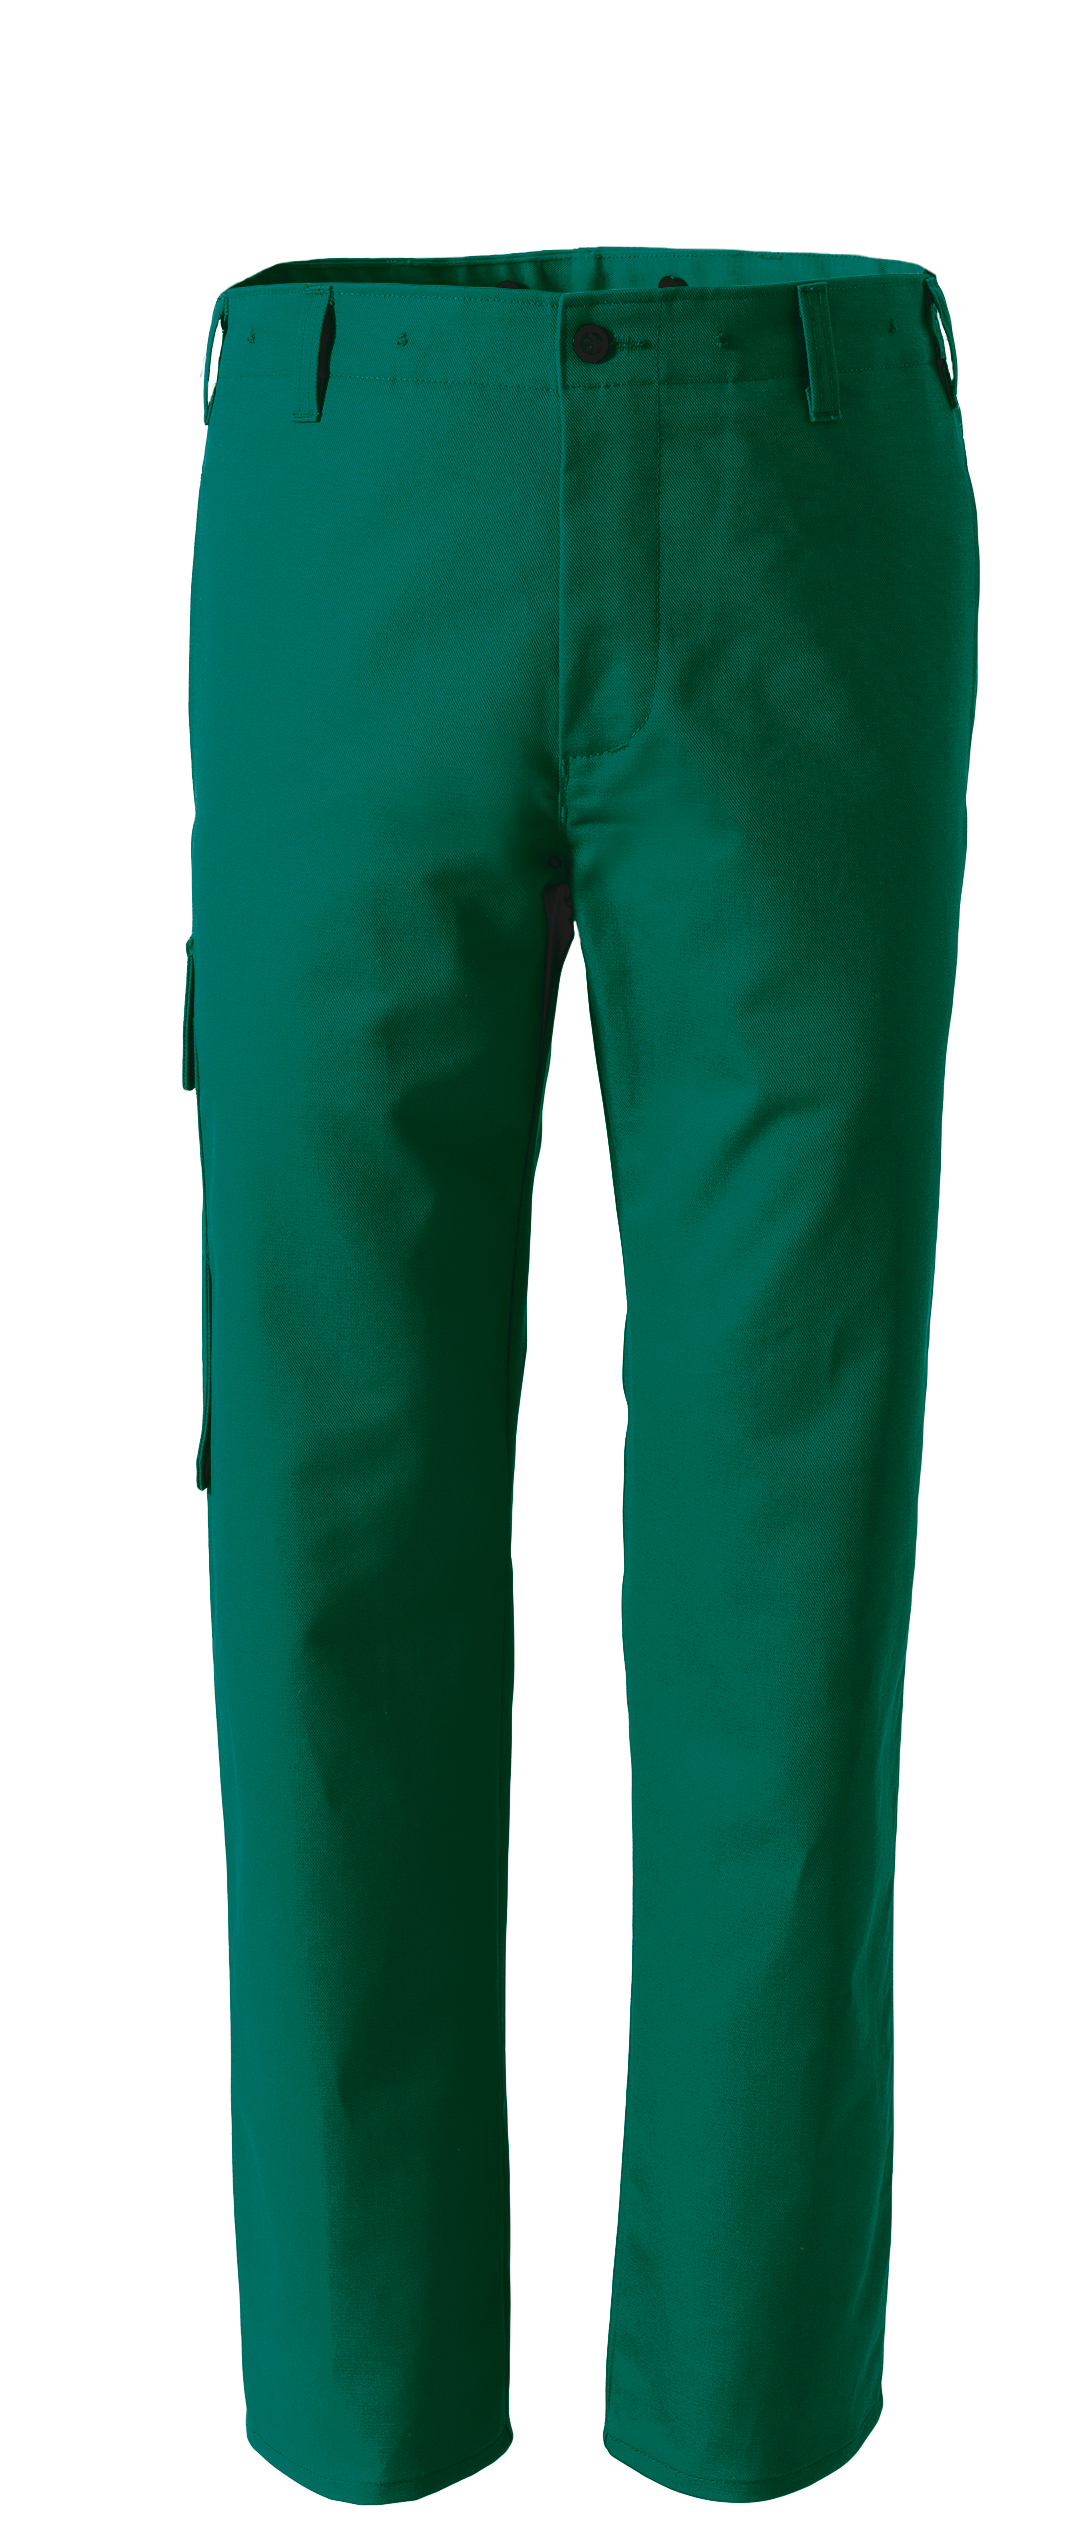 ROFA Schweißerschutzhose Arbeitshose Schweißerhose Schweißerkleidung Proban grün ca 525 g